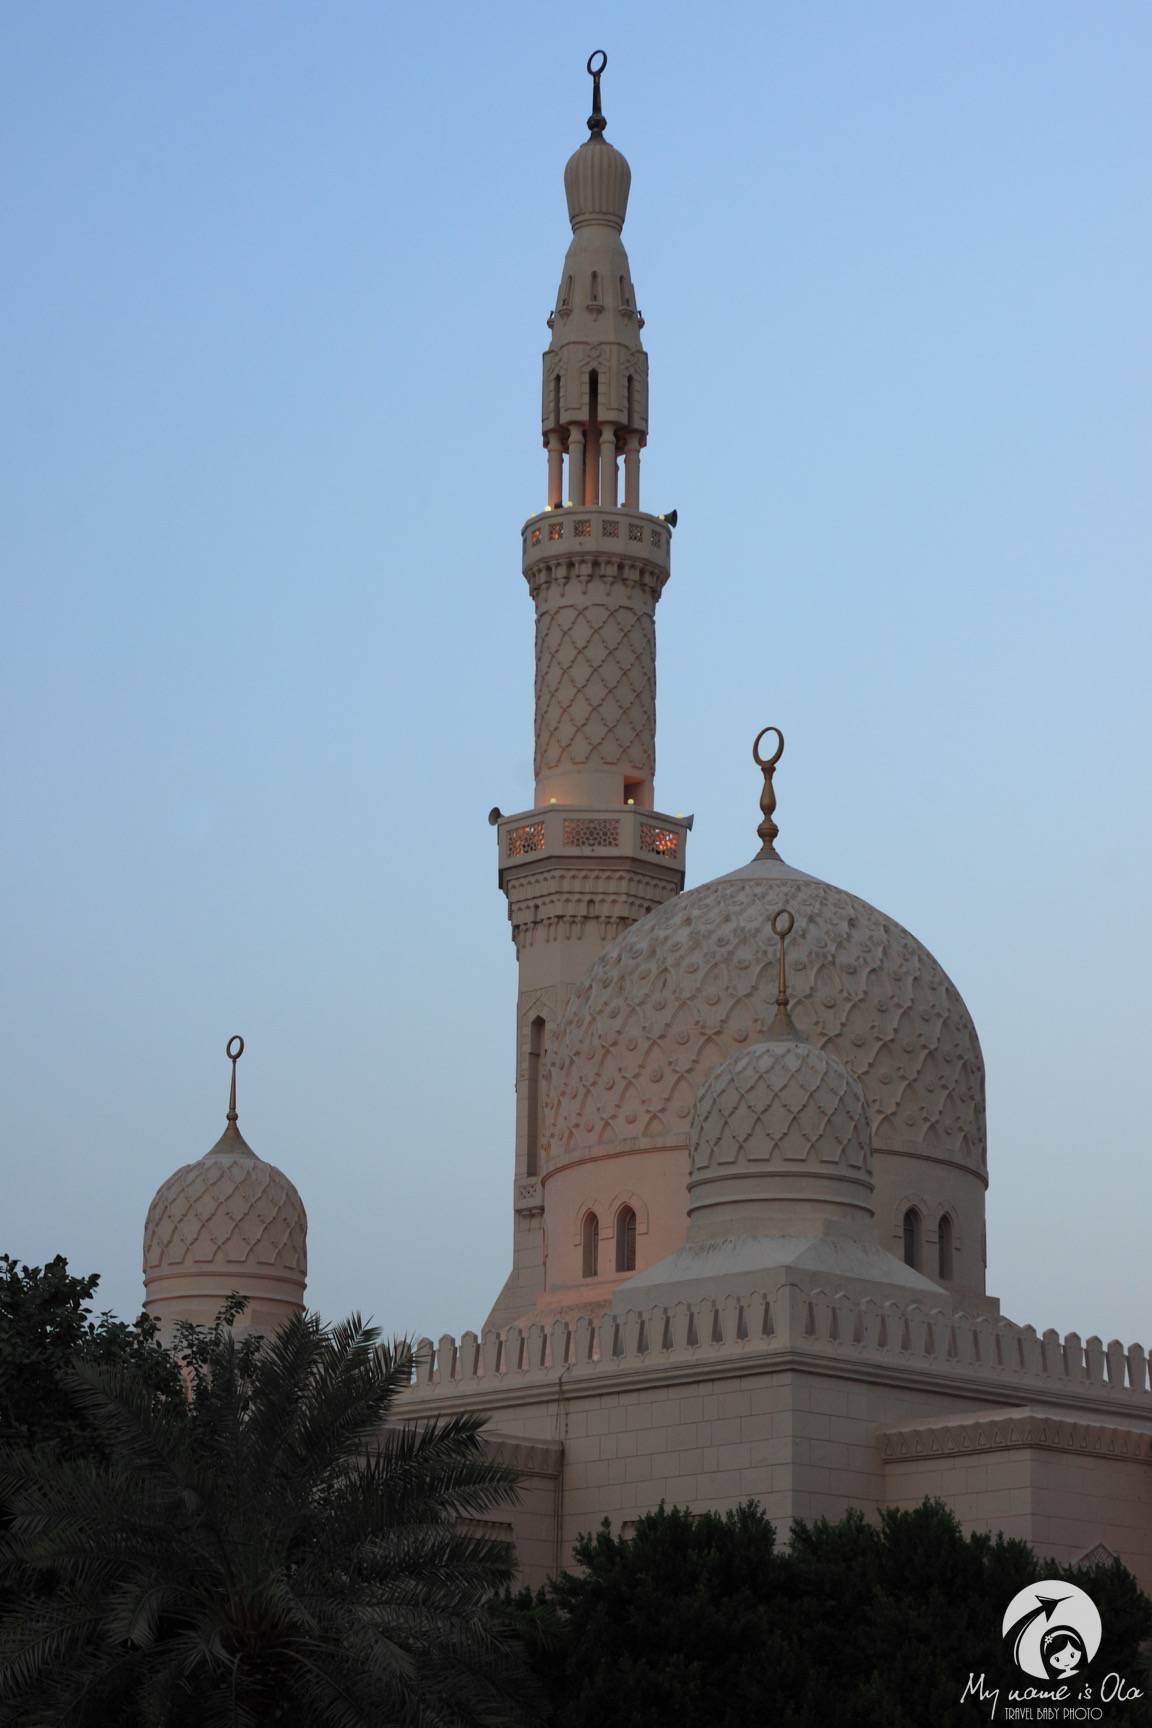 Jumeirah mosque, Dubai